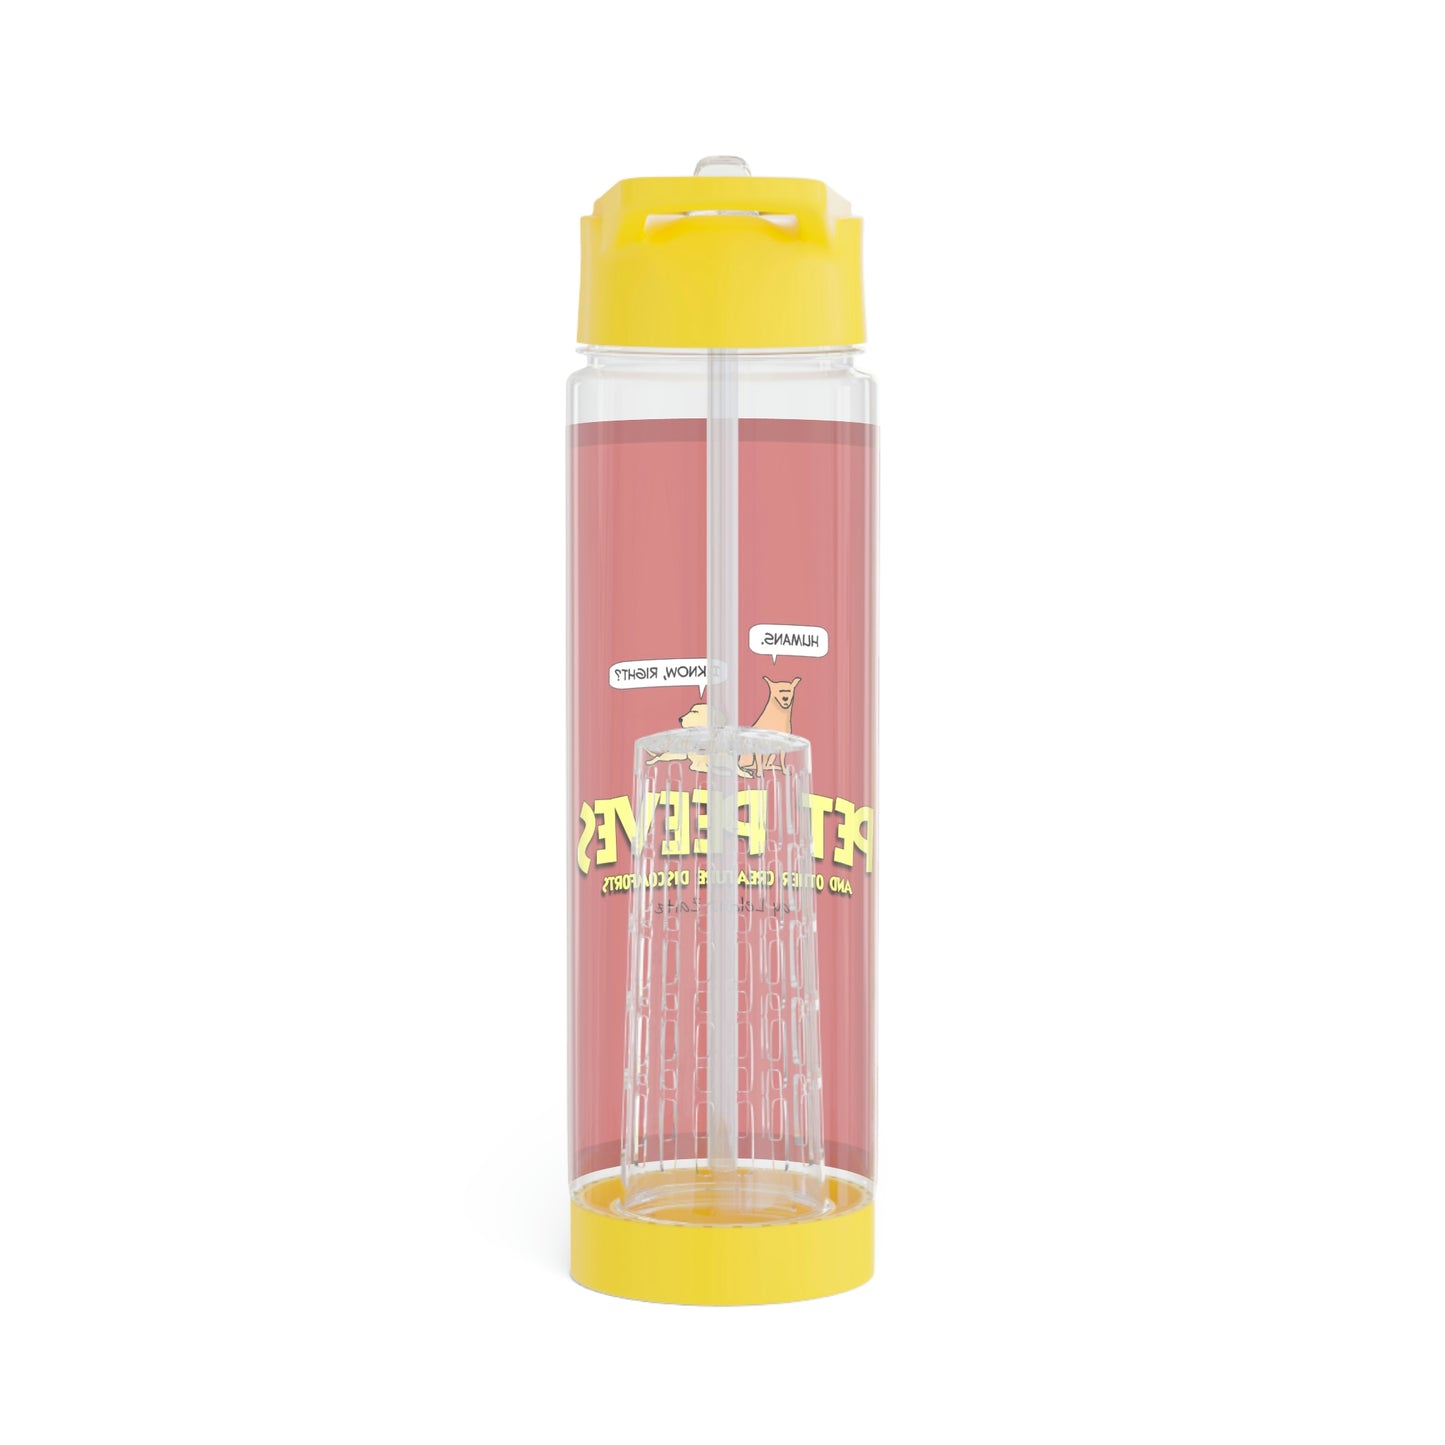 Pet Peeves - Infuser Water Bottle